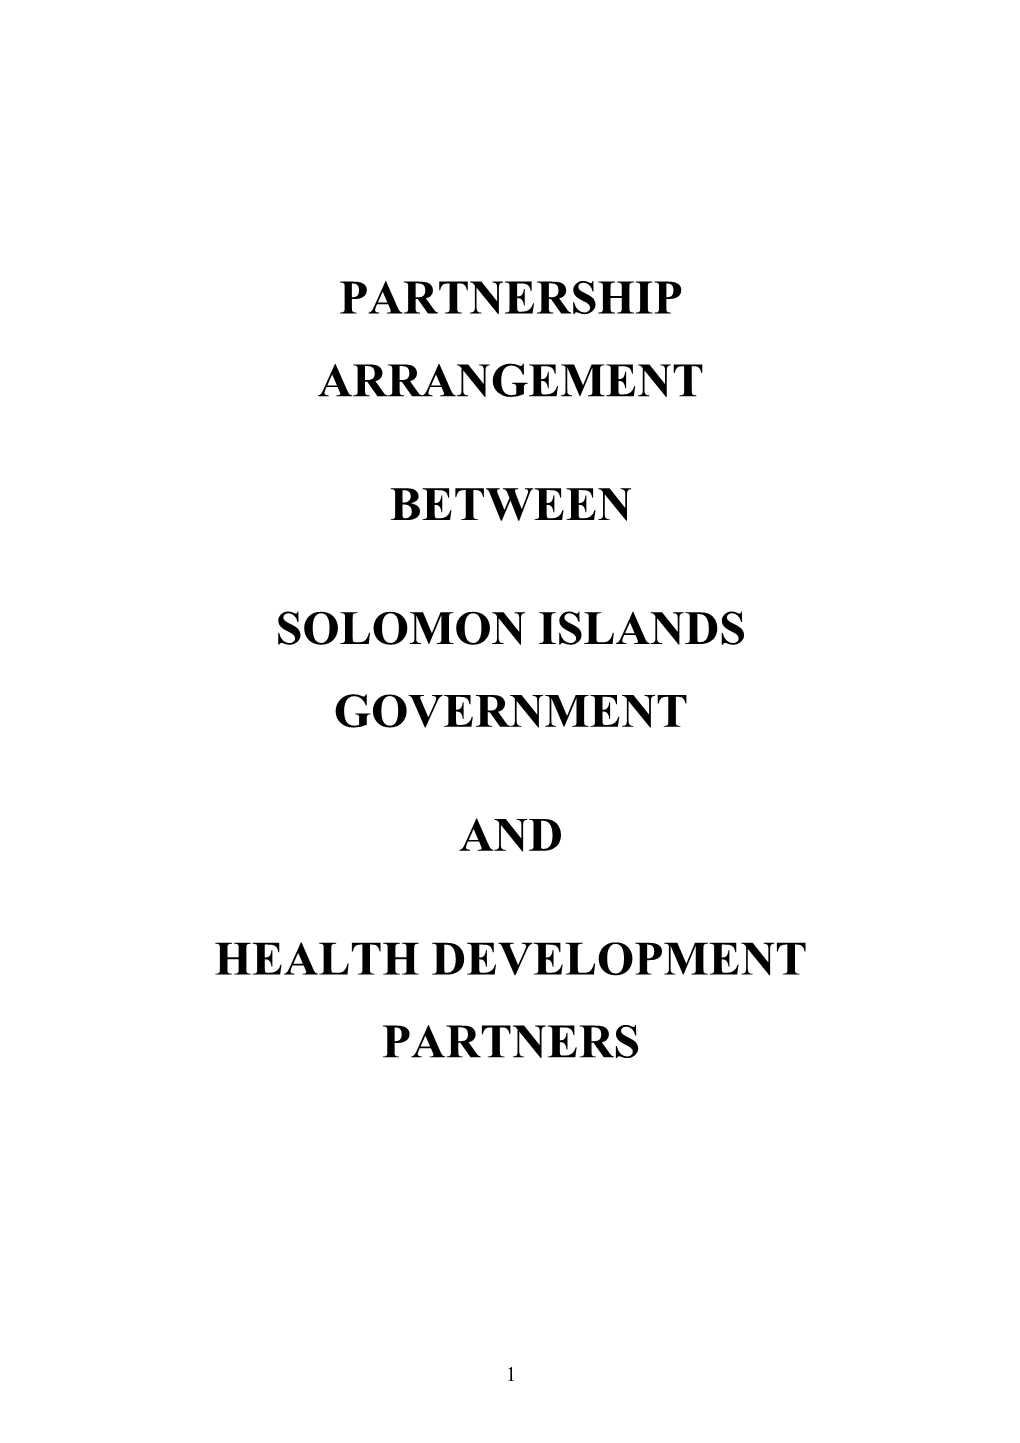 Partnership Arrangement Between Solomon Islands Government and Health Development Partners